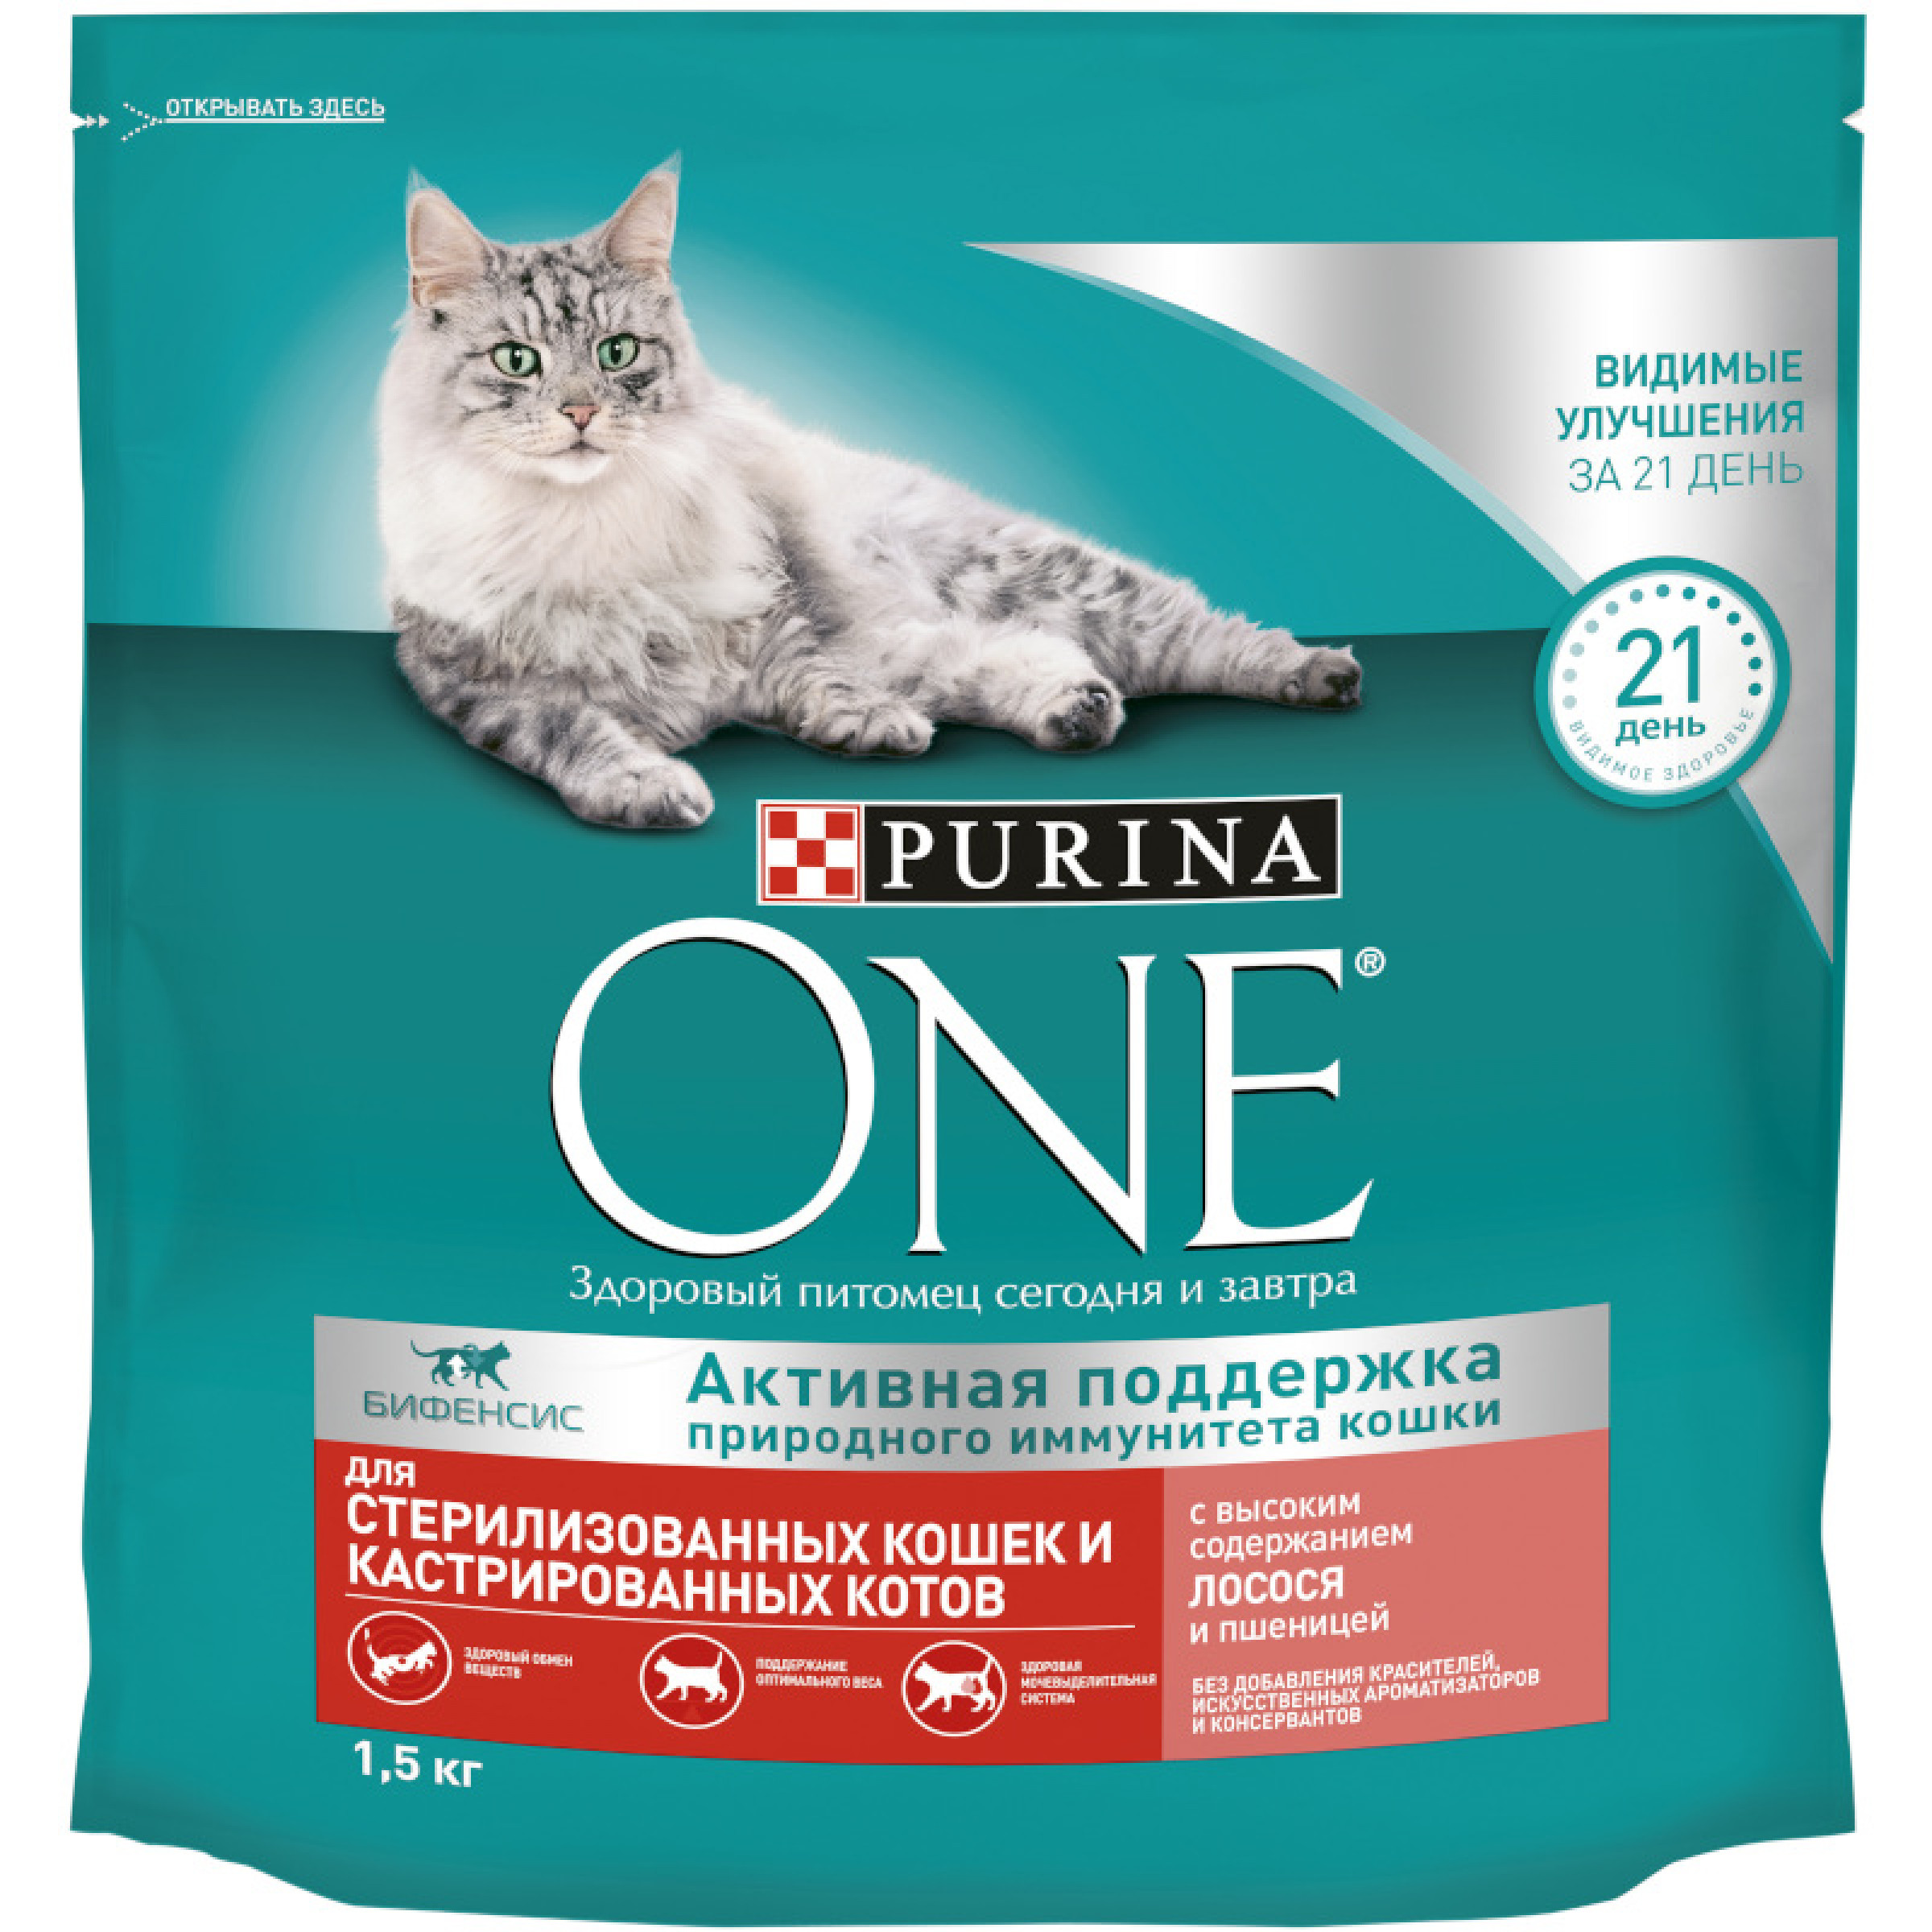 Сухой корм Purina ONE для стерилизованных кошек лосось и пшеница, 1.5 кг